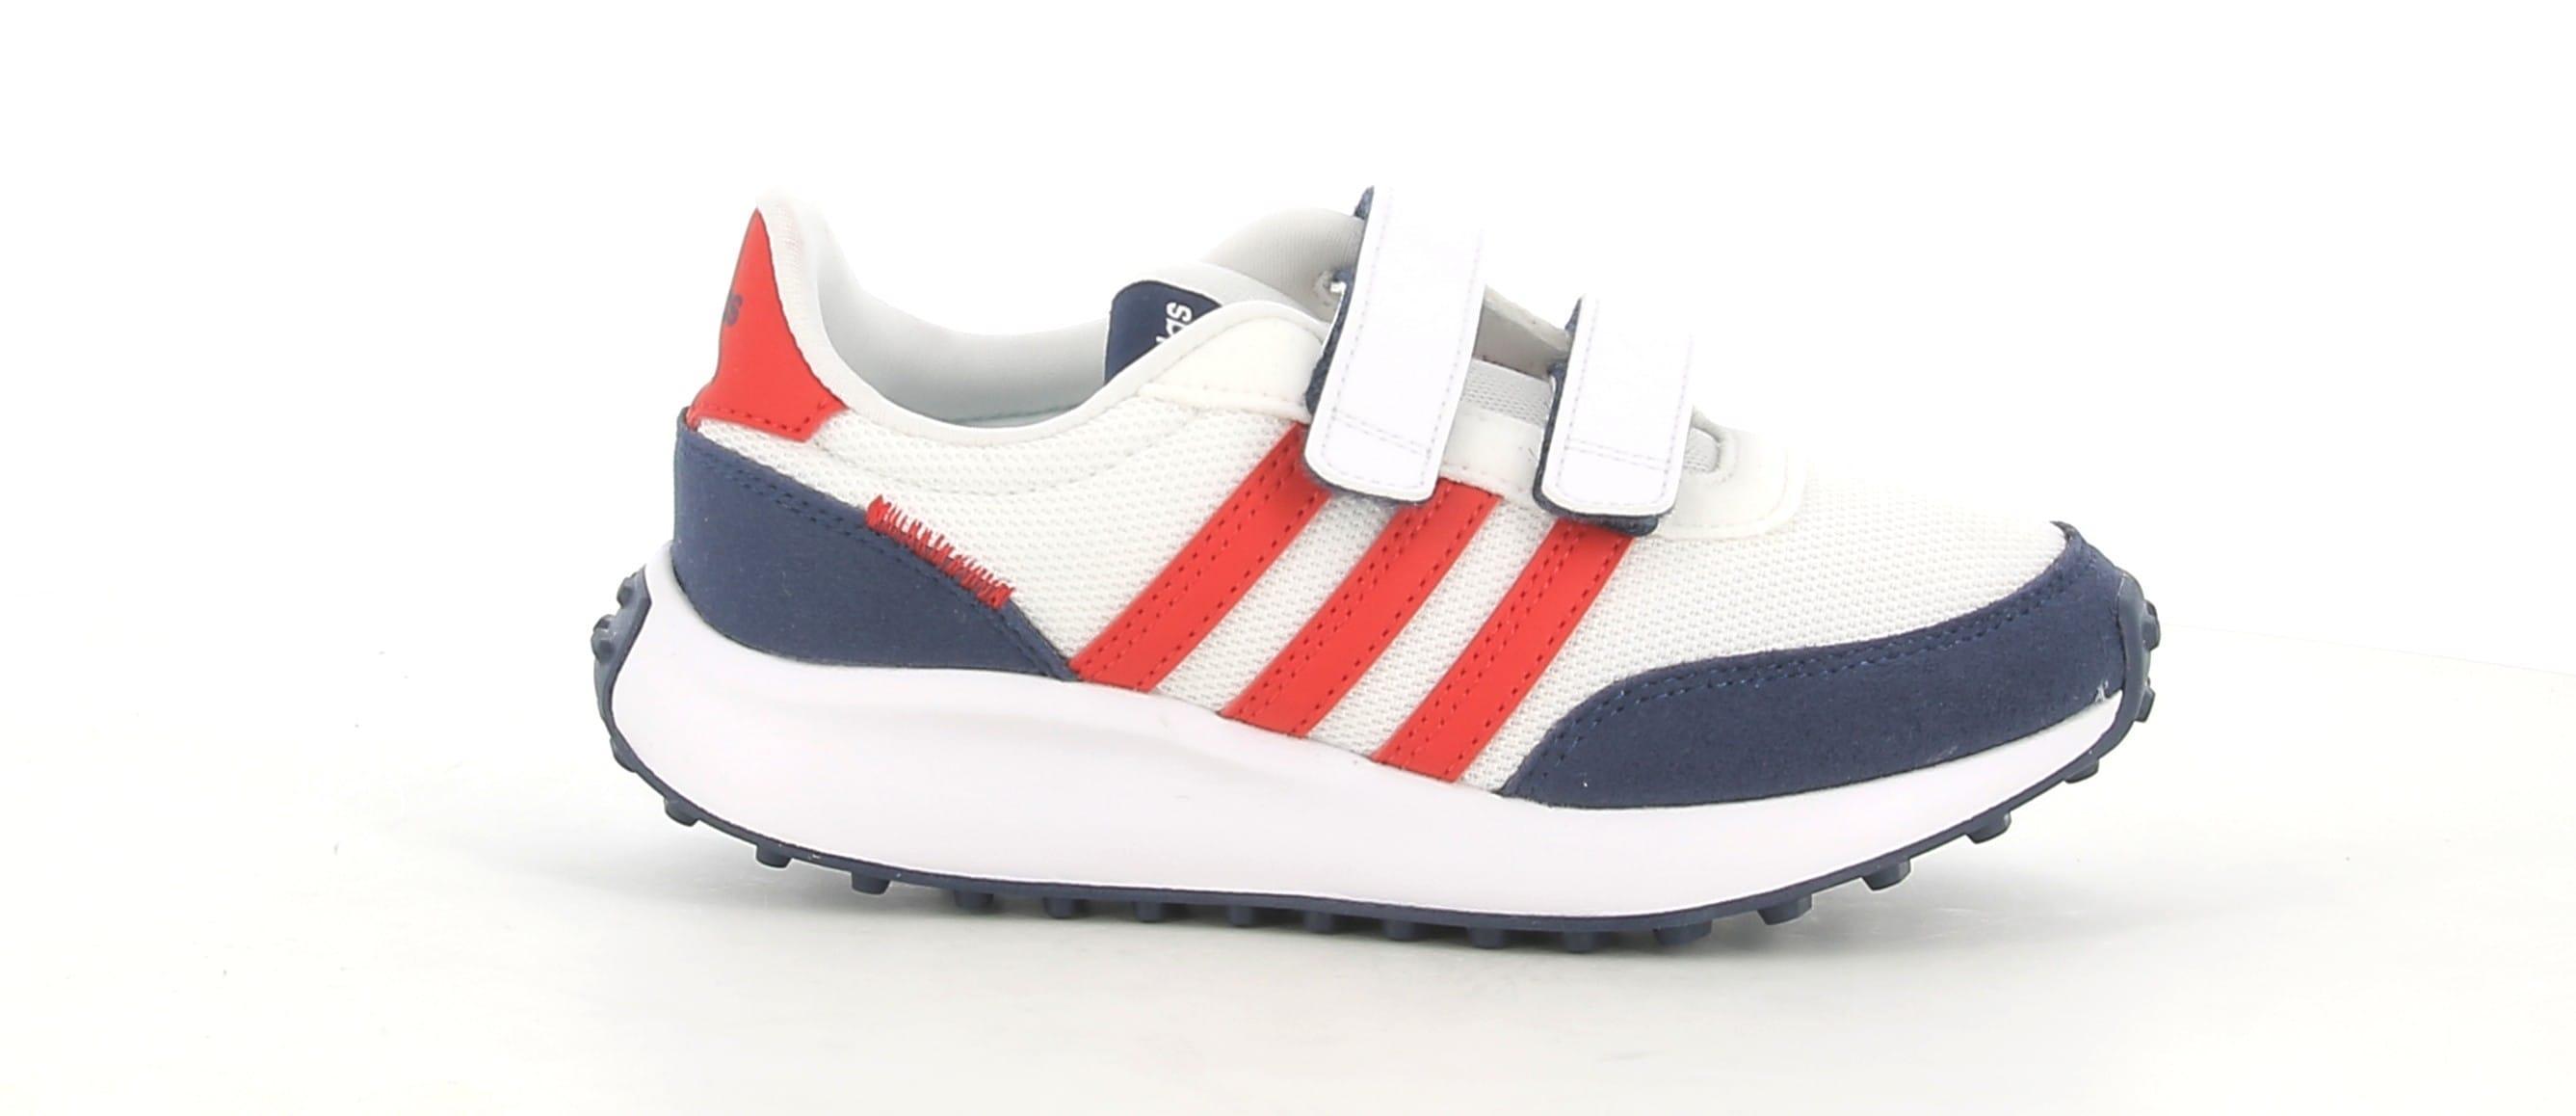 adidas sneakers adidas run 70s cf k gw0333.da bambino,colore bianco/rosso/blu